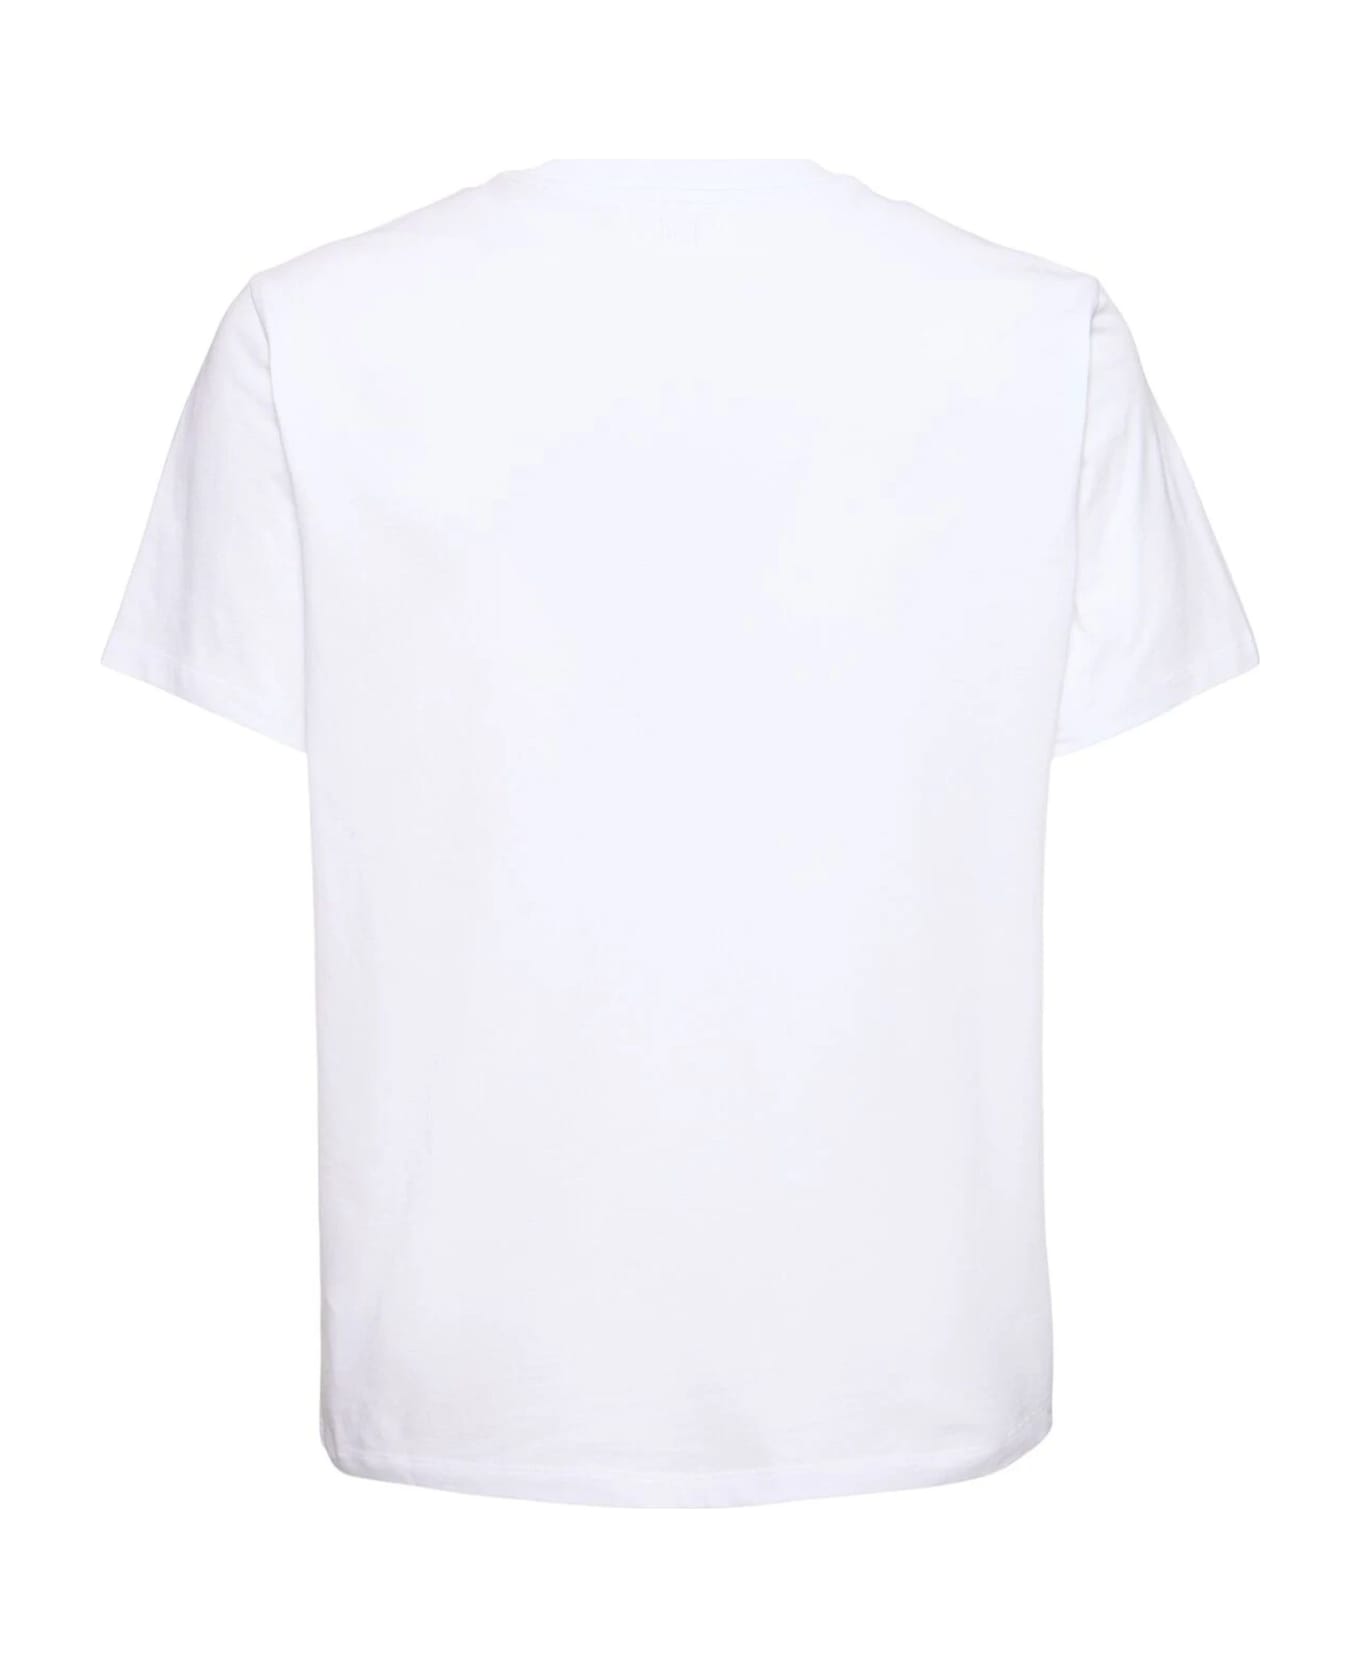 Ami Alexandre Mattiussi Ami T-shirts And Polos White - White